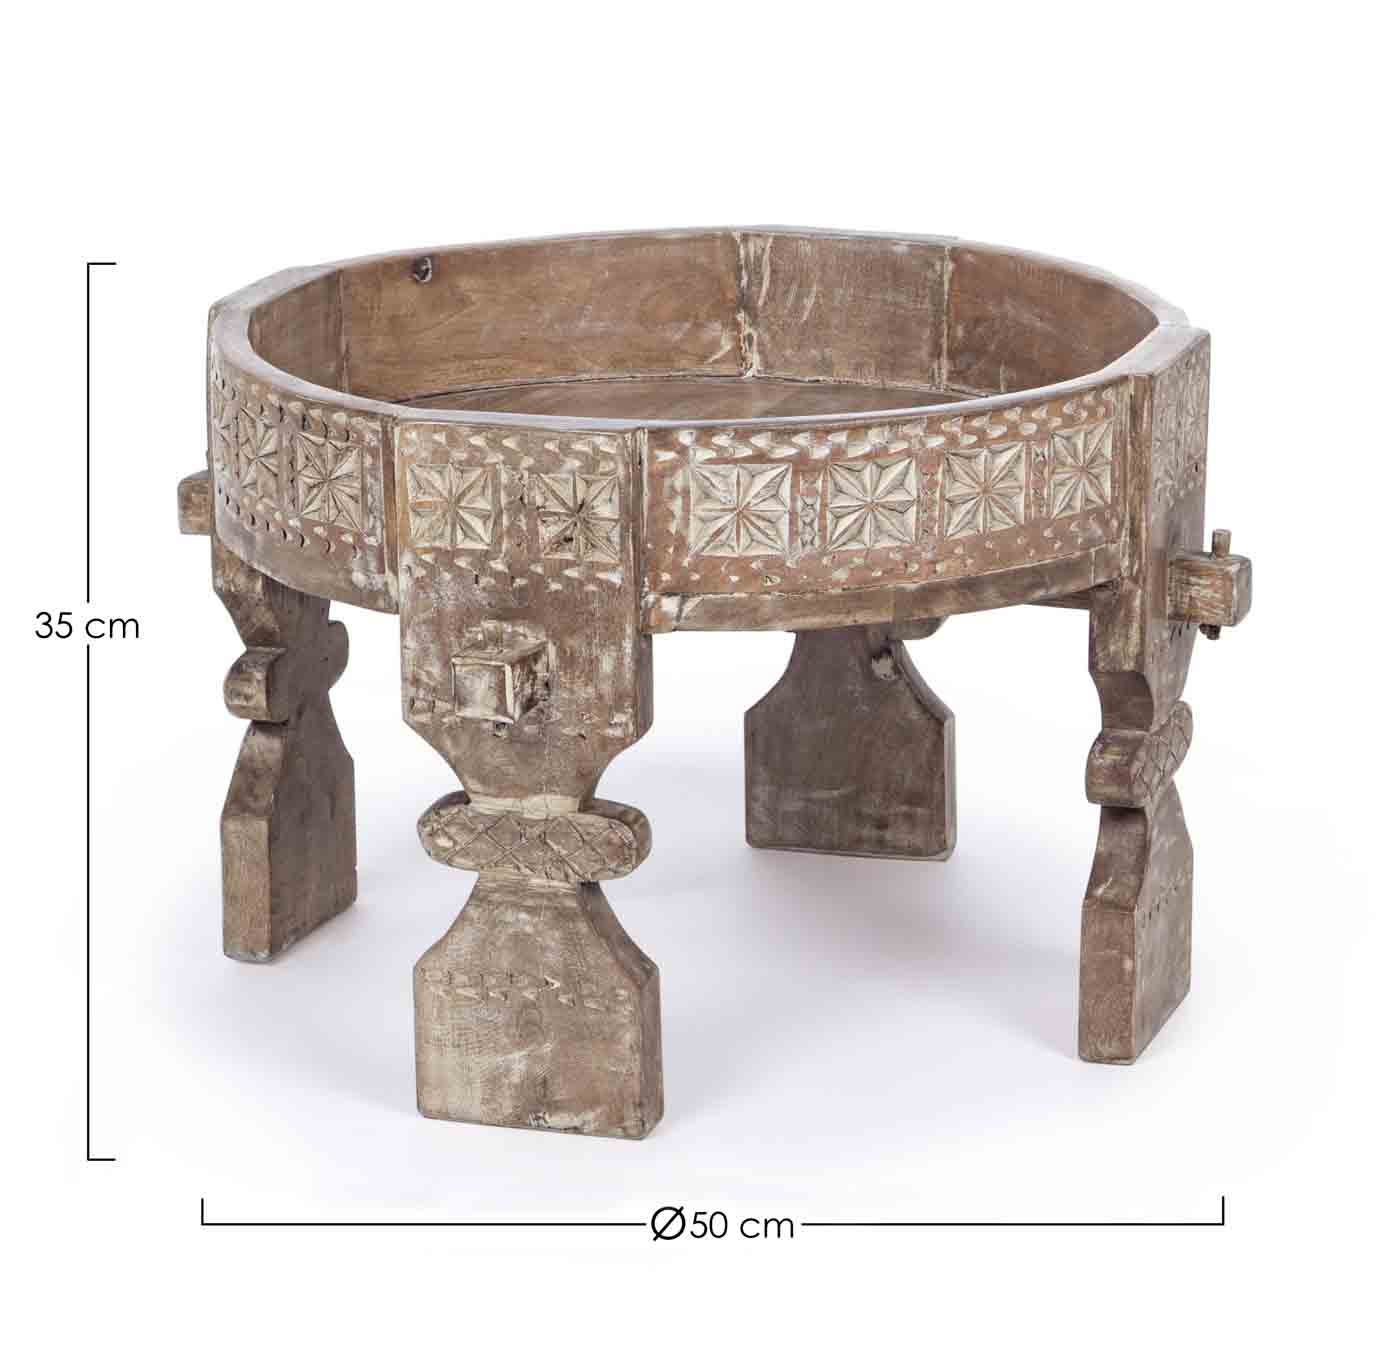 Das Skandinavische Design des Beistelltisches Yasir überzeugt. Gefertigt wurde der Tisch aus Mangoholz und hat per Hand eine Feinbearbeitung erhalten. Der Tisch ist in einem natürlichen Farbton.